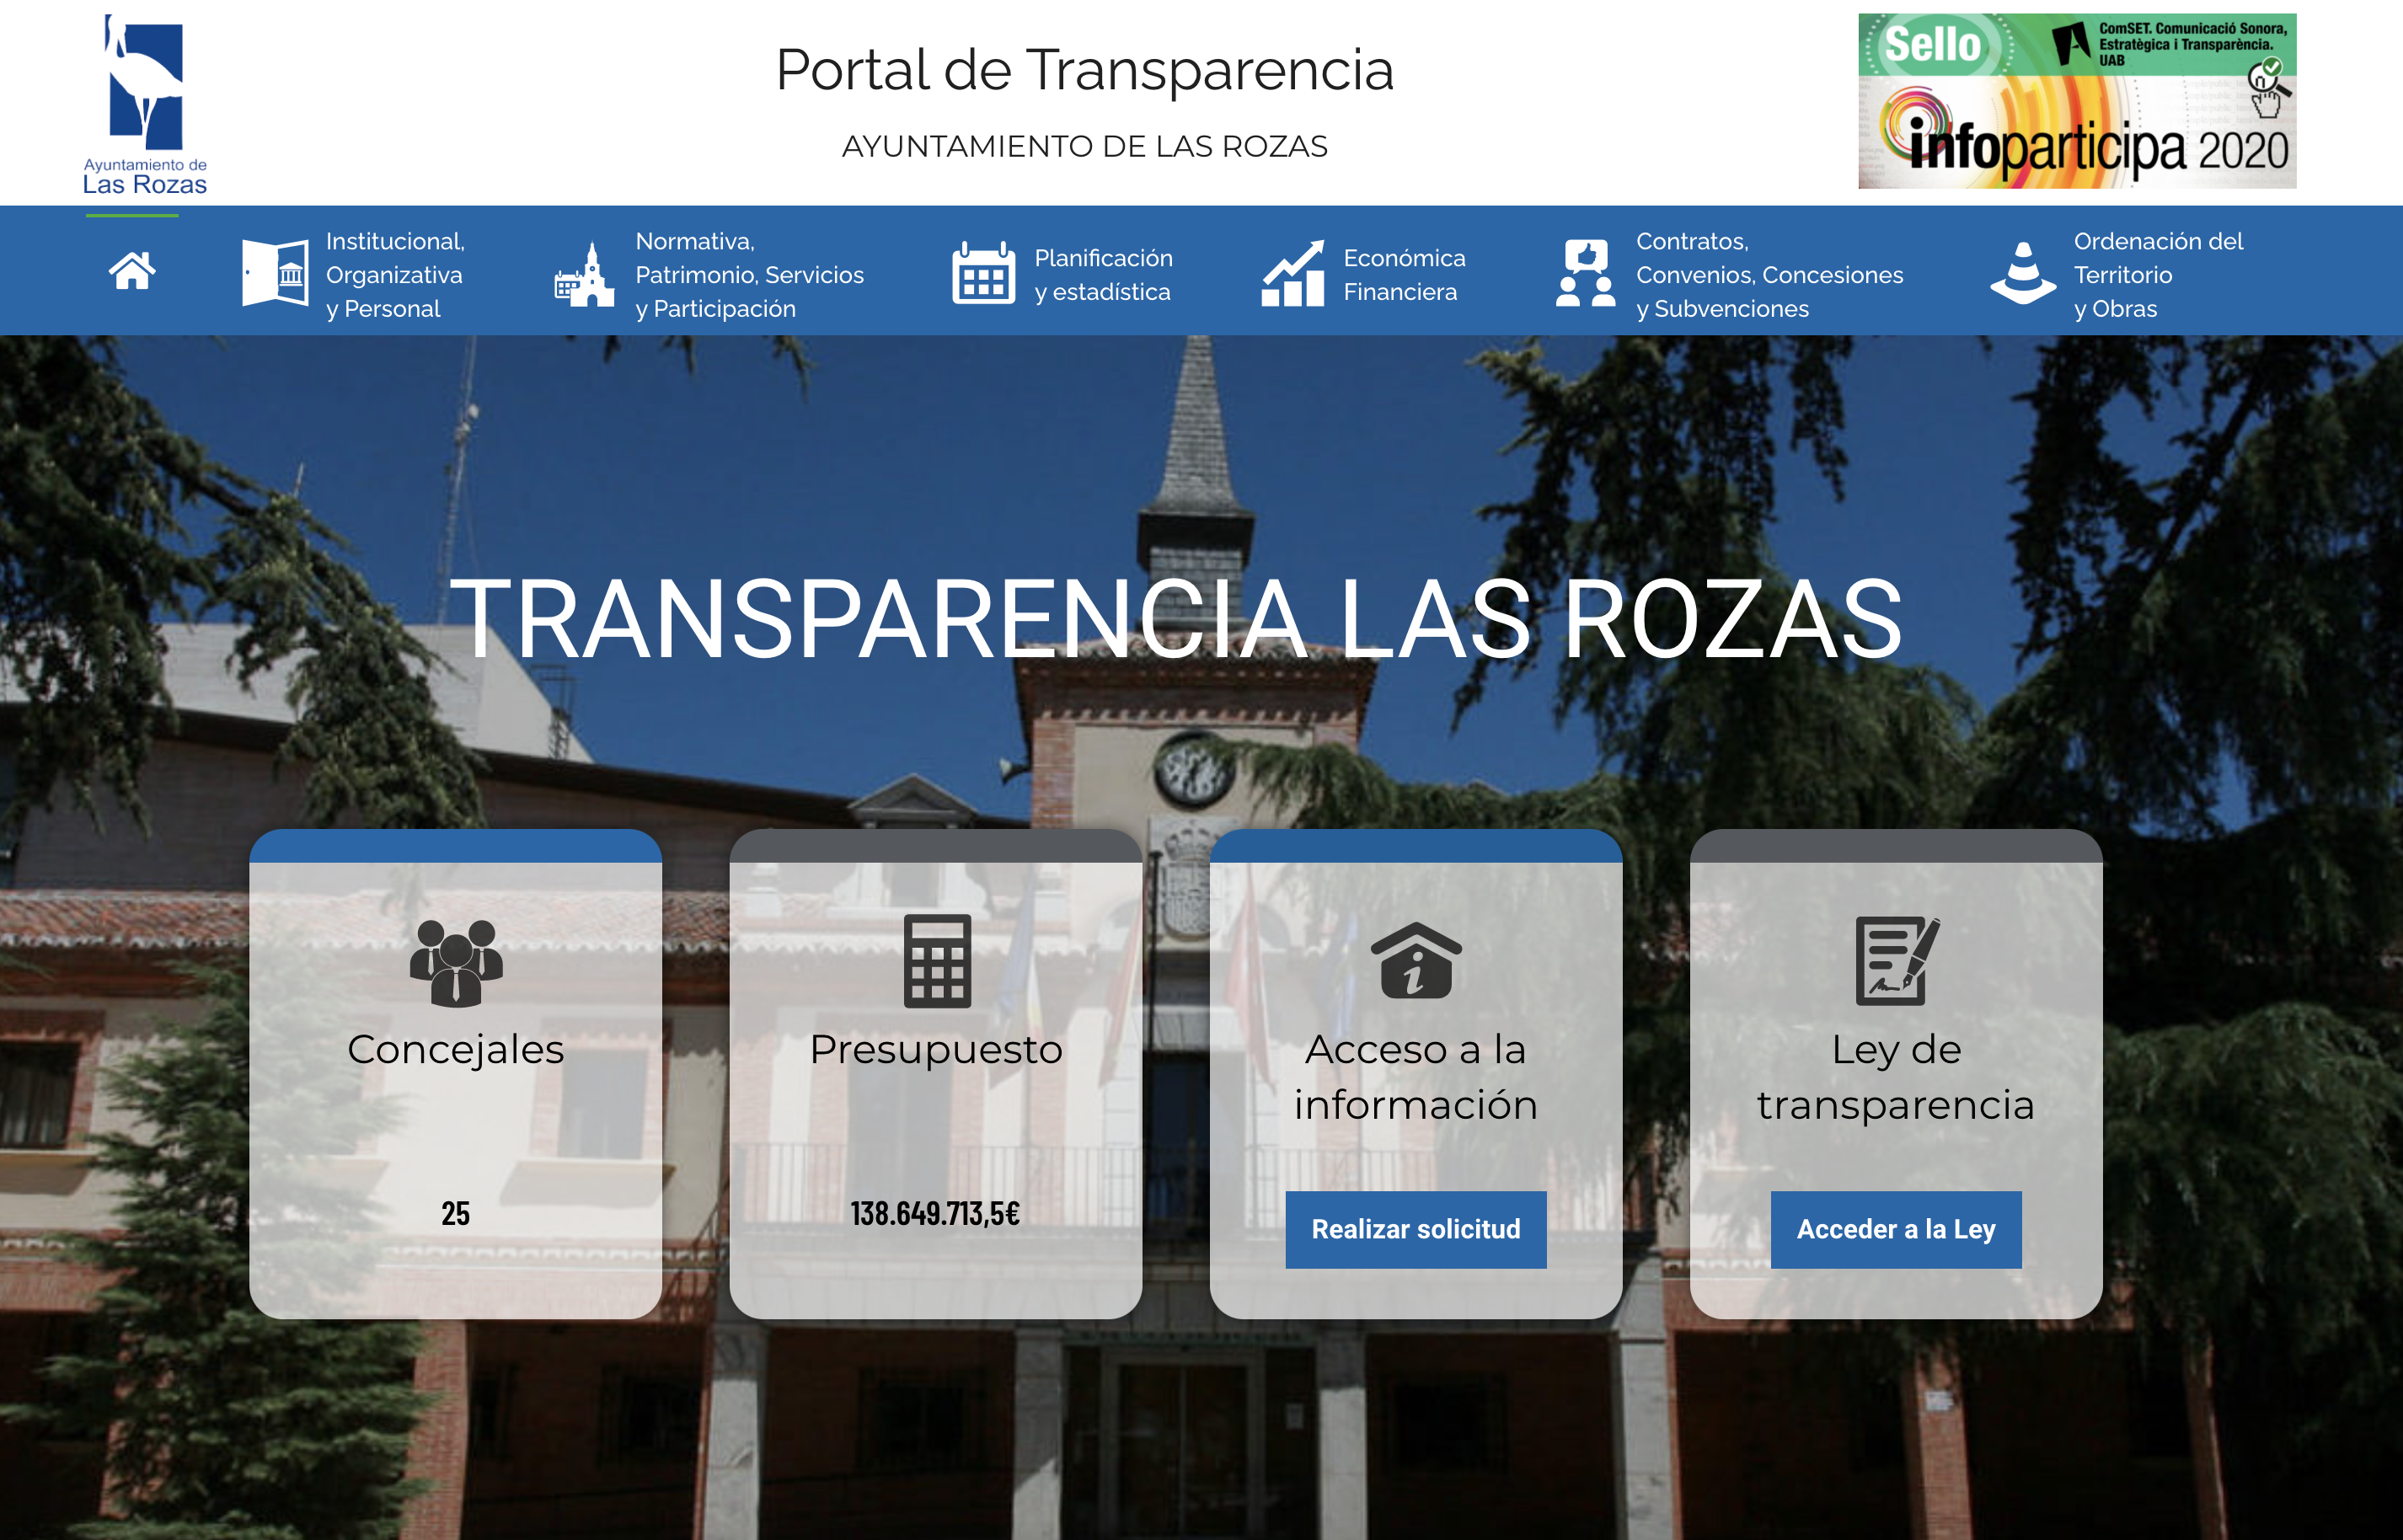 Portal de Transparencia de Las Rozas